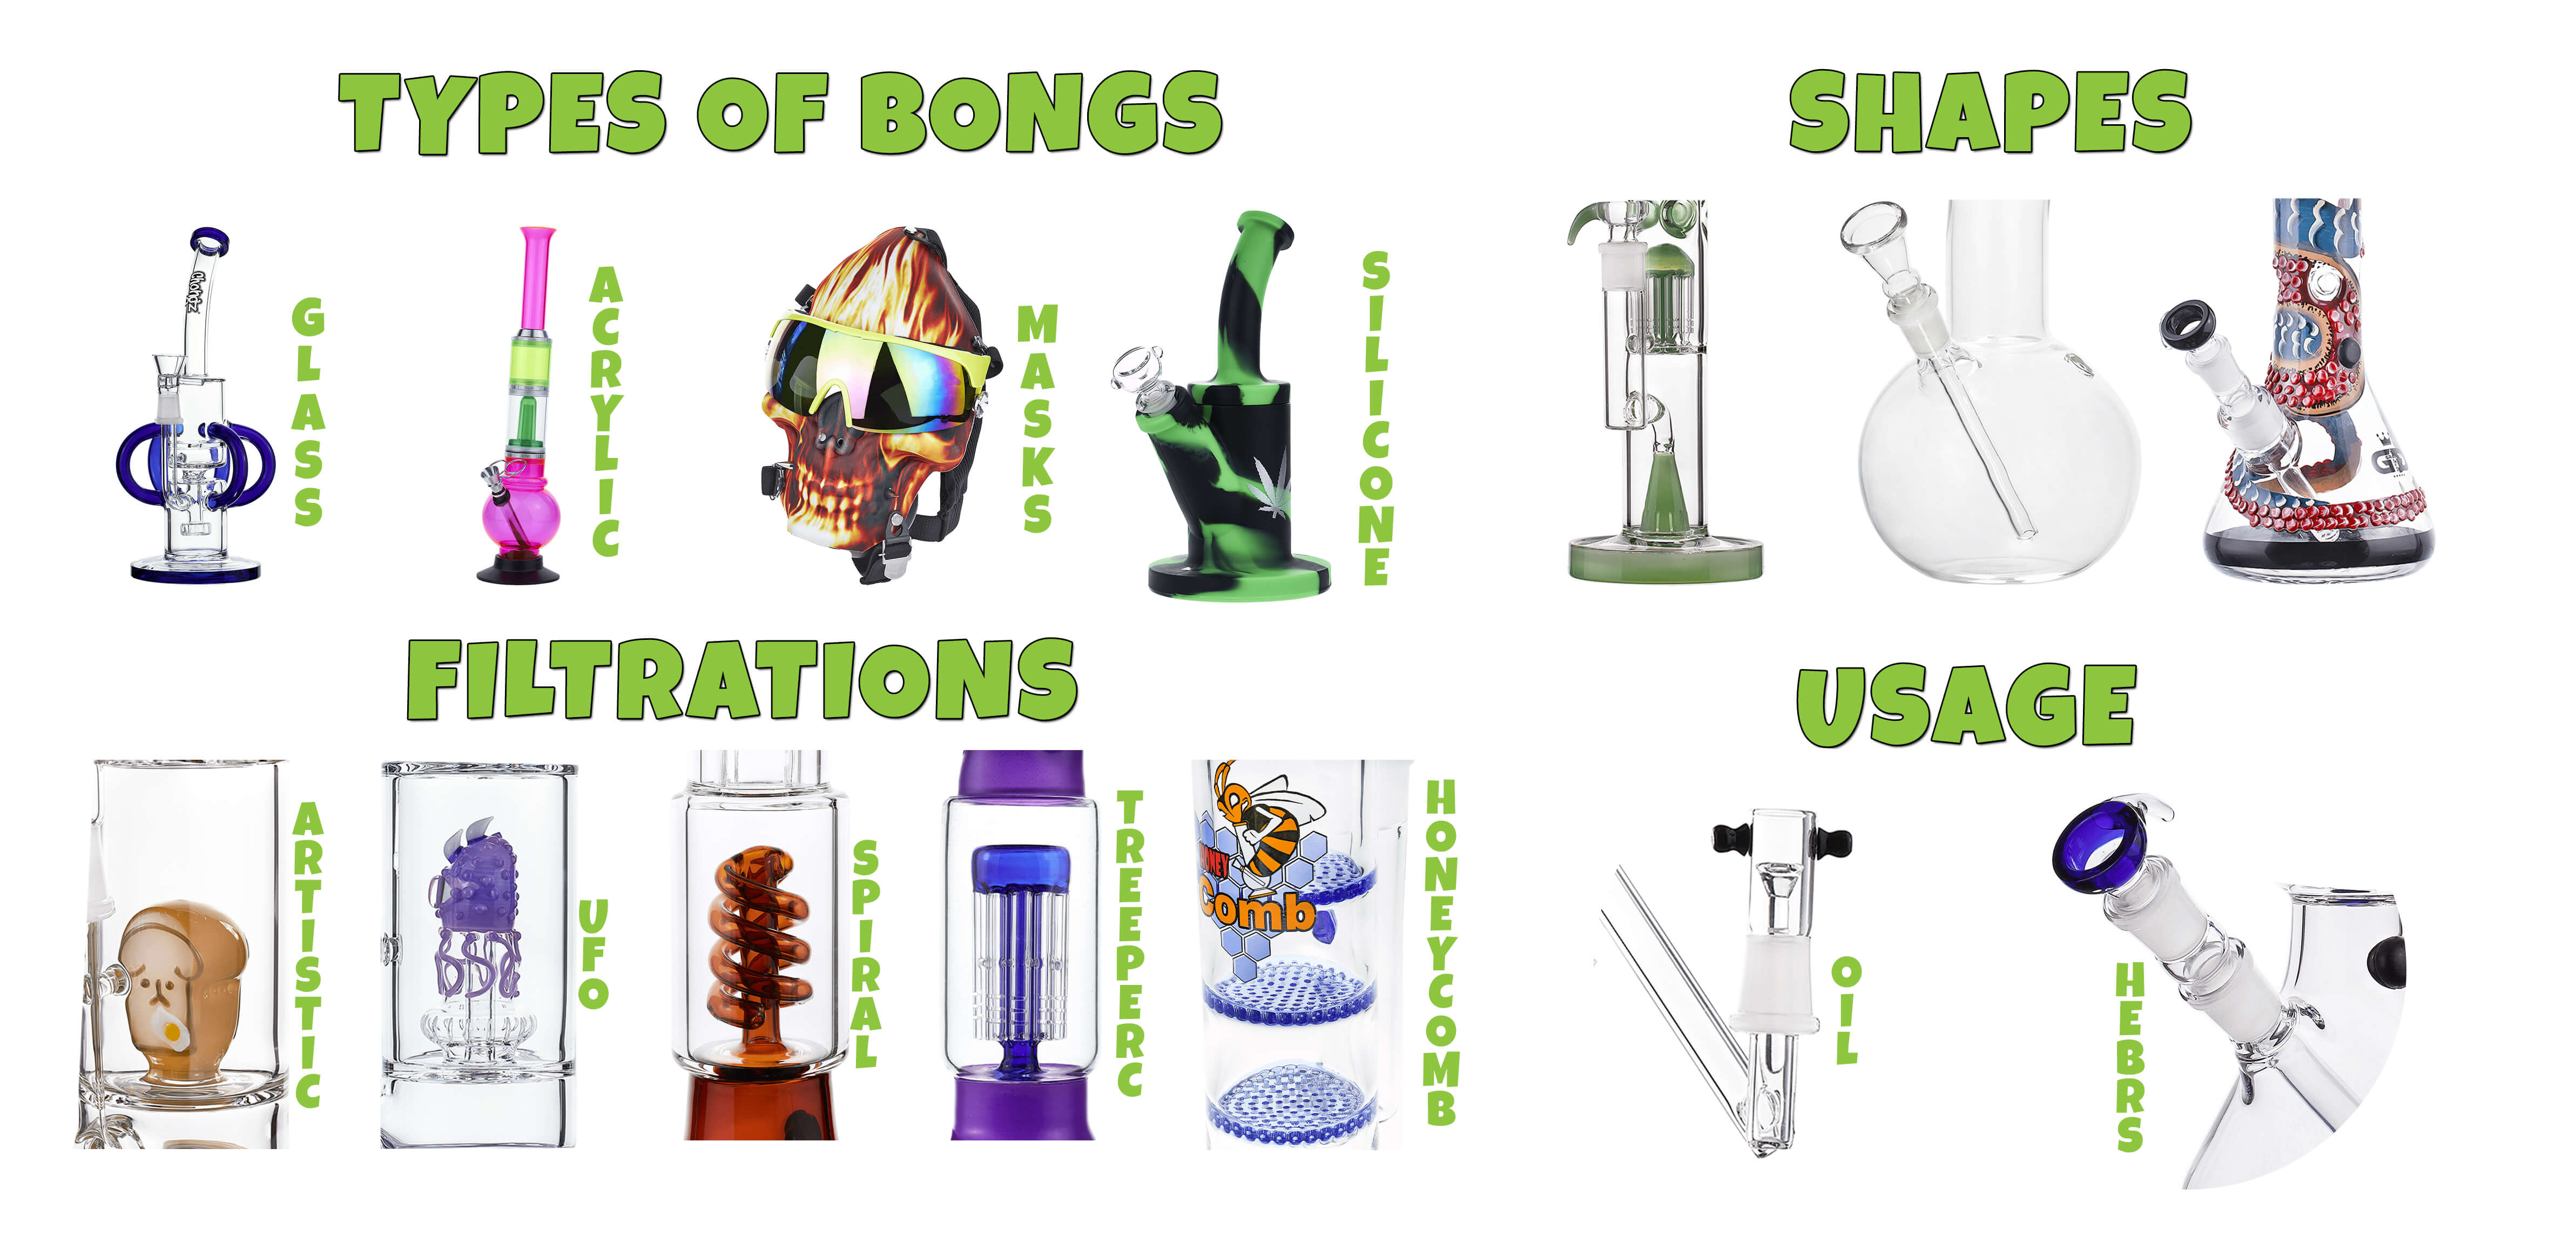 Types of glass bongs